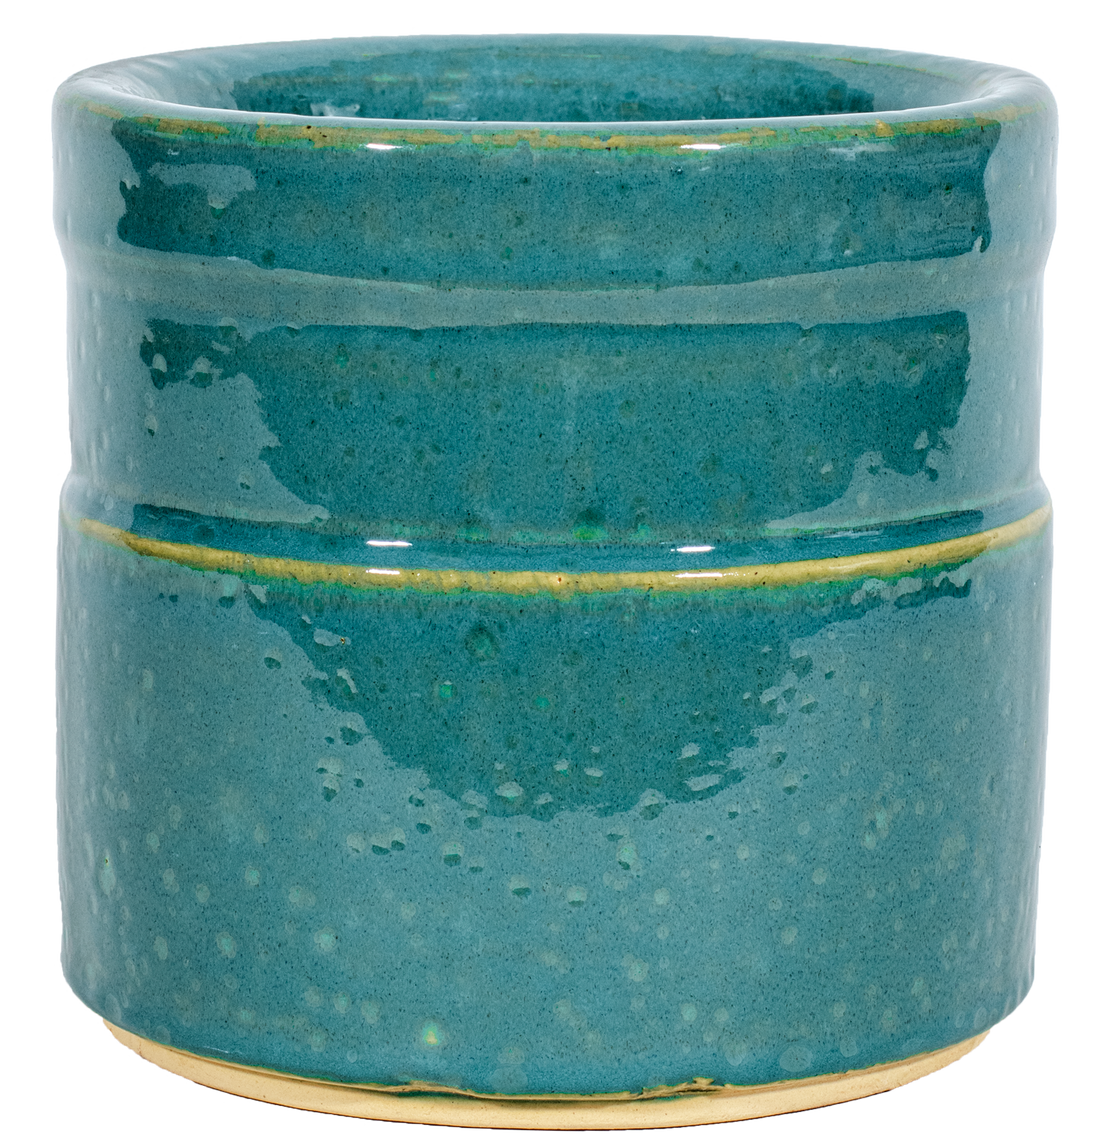 Banded Cylinder - Mosaic Turquoise